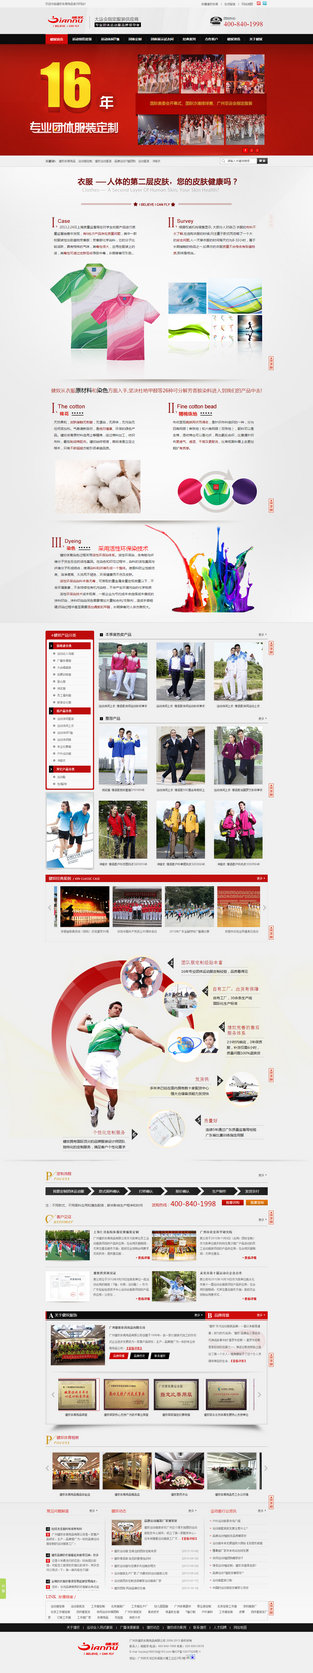 广东健奴体育用品营销型网站案例展示